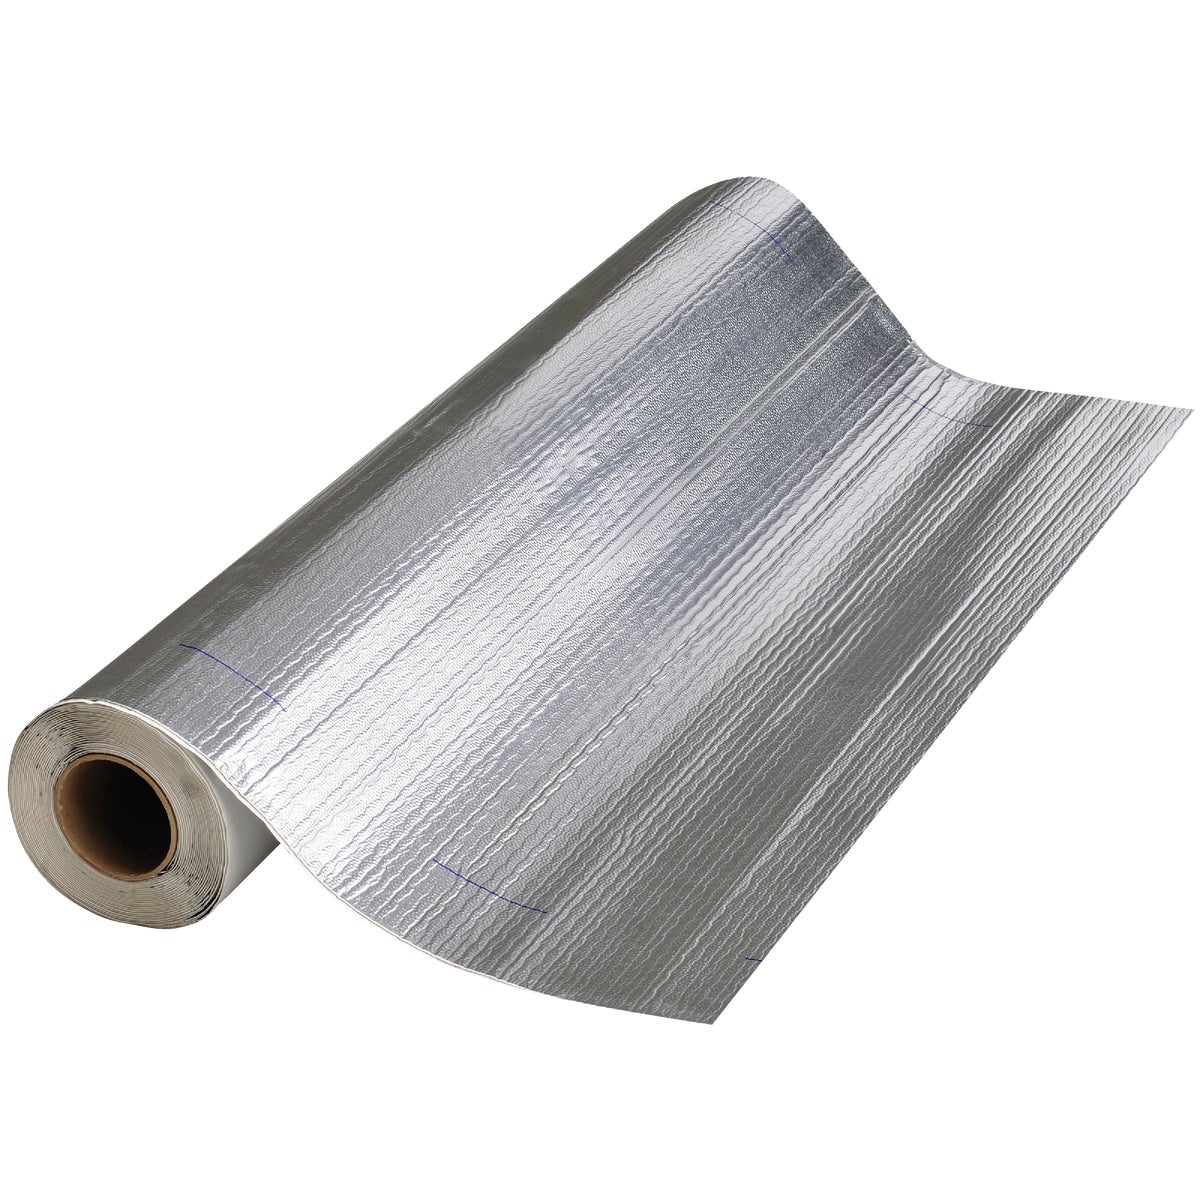 Peel & Seal Aluminum Roofing Membrane